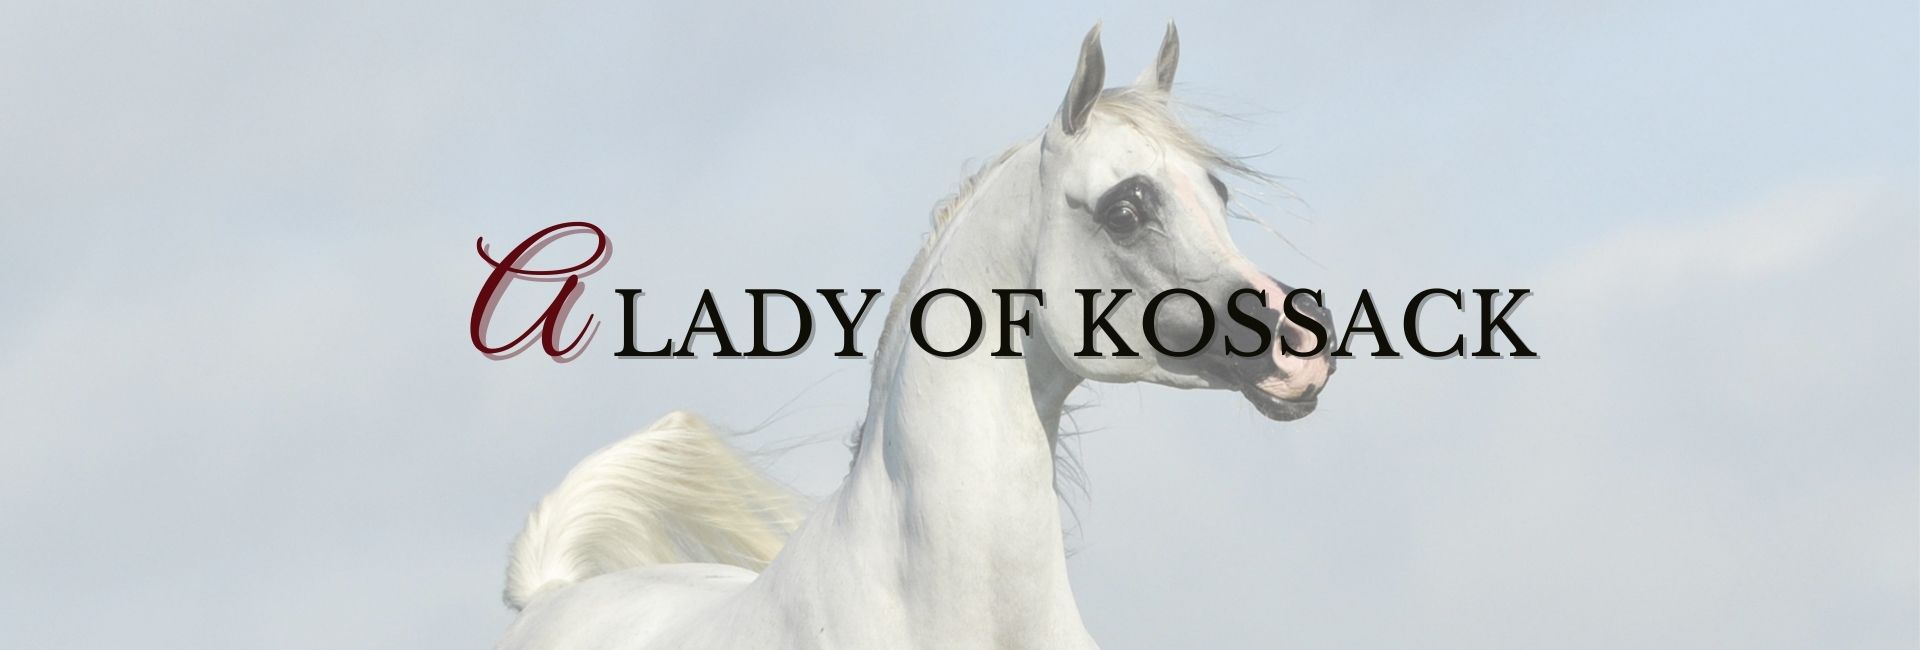 A Lady of Kossack